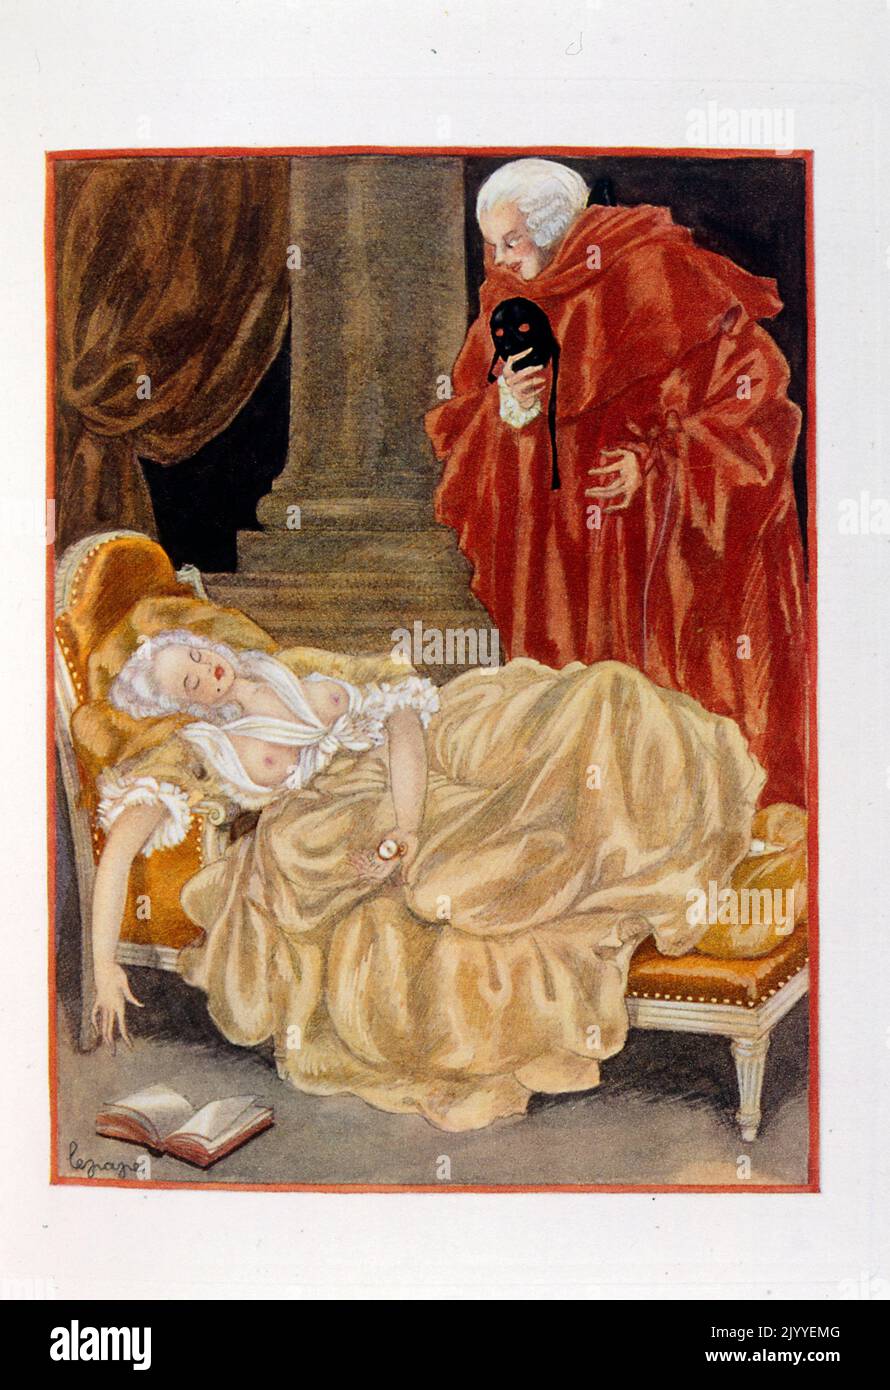 Abbildung einer Maskenkugel, bei der der Maskenmann seine Maske auszieht und eine Dame auf der Couch schlafend sieht; von Georges Lepape (1887-1971), französischer Plakatkünstler, Illustrator und Modedesigner Stockfoto